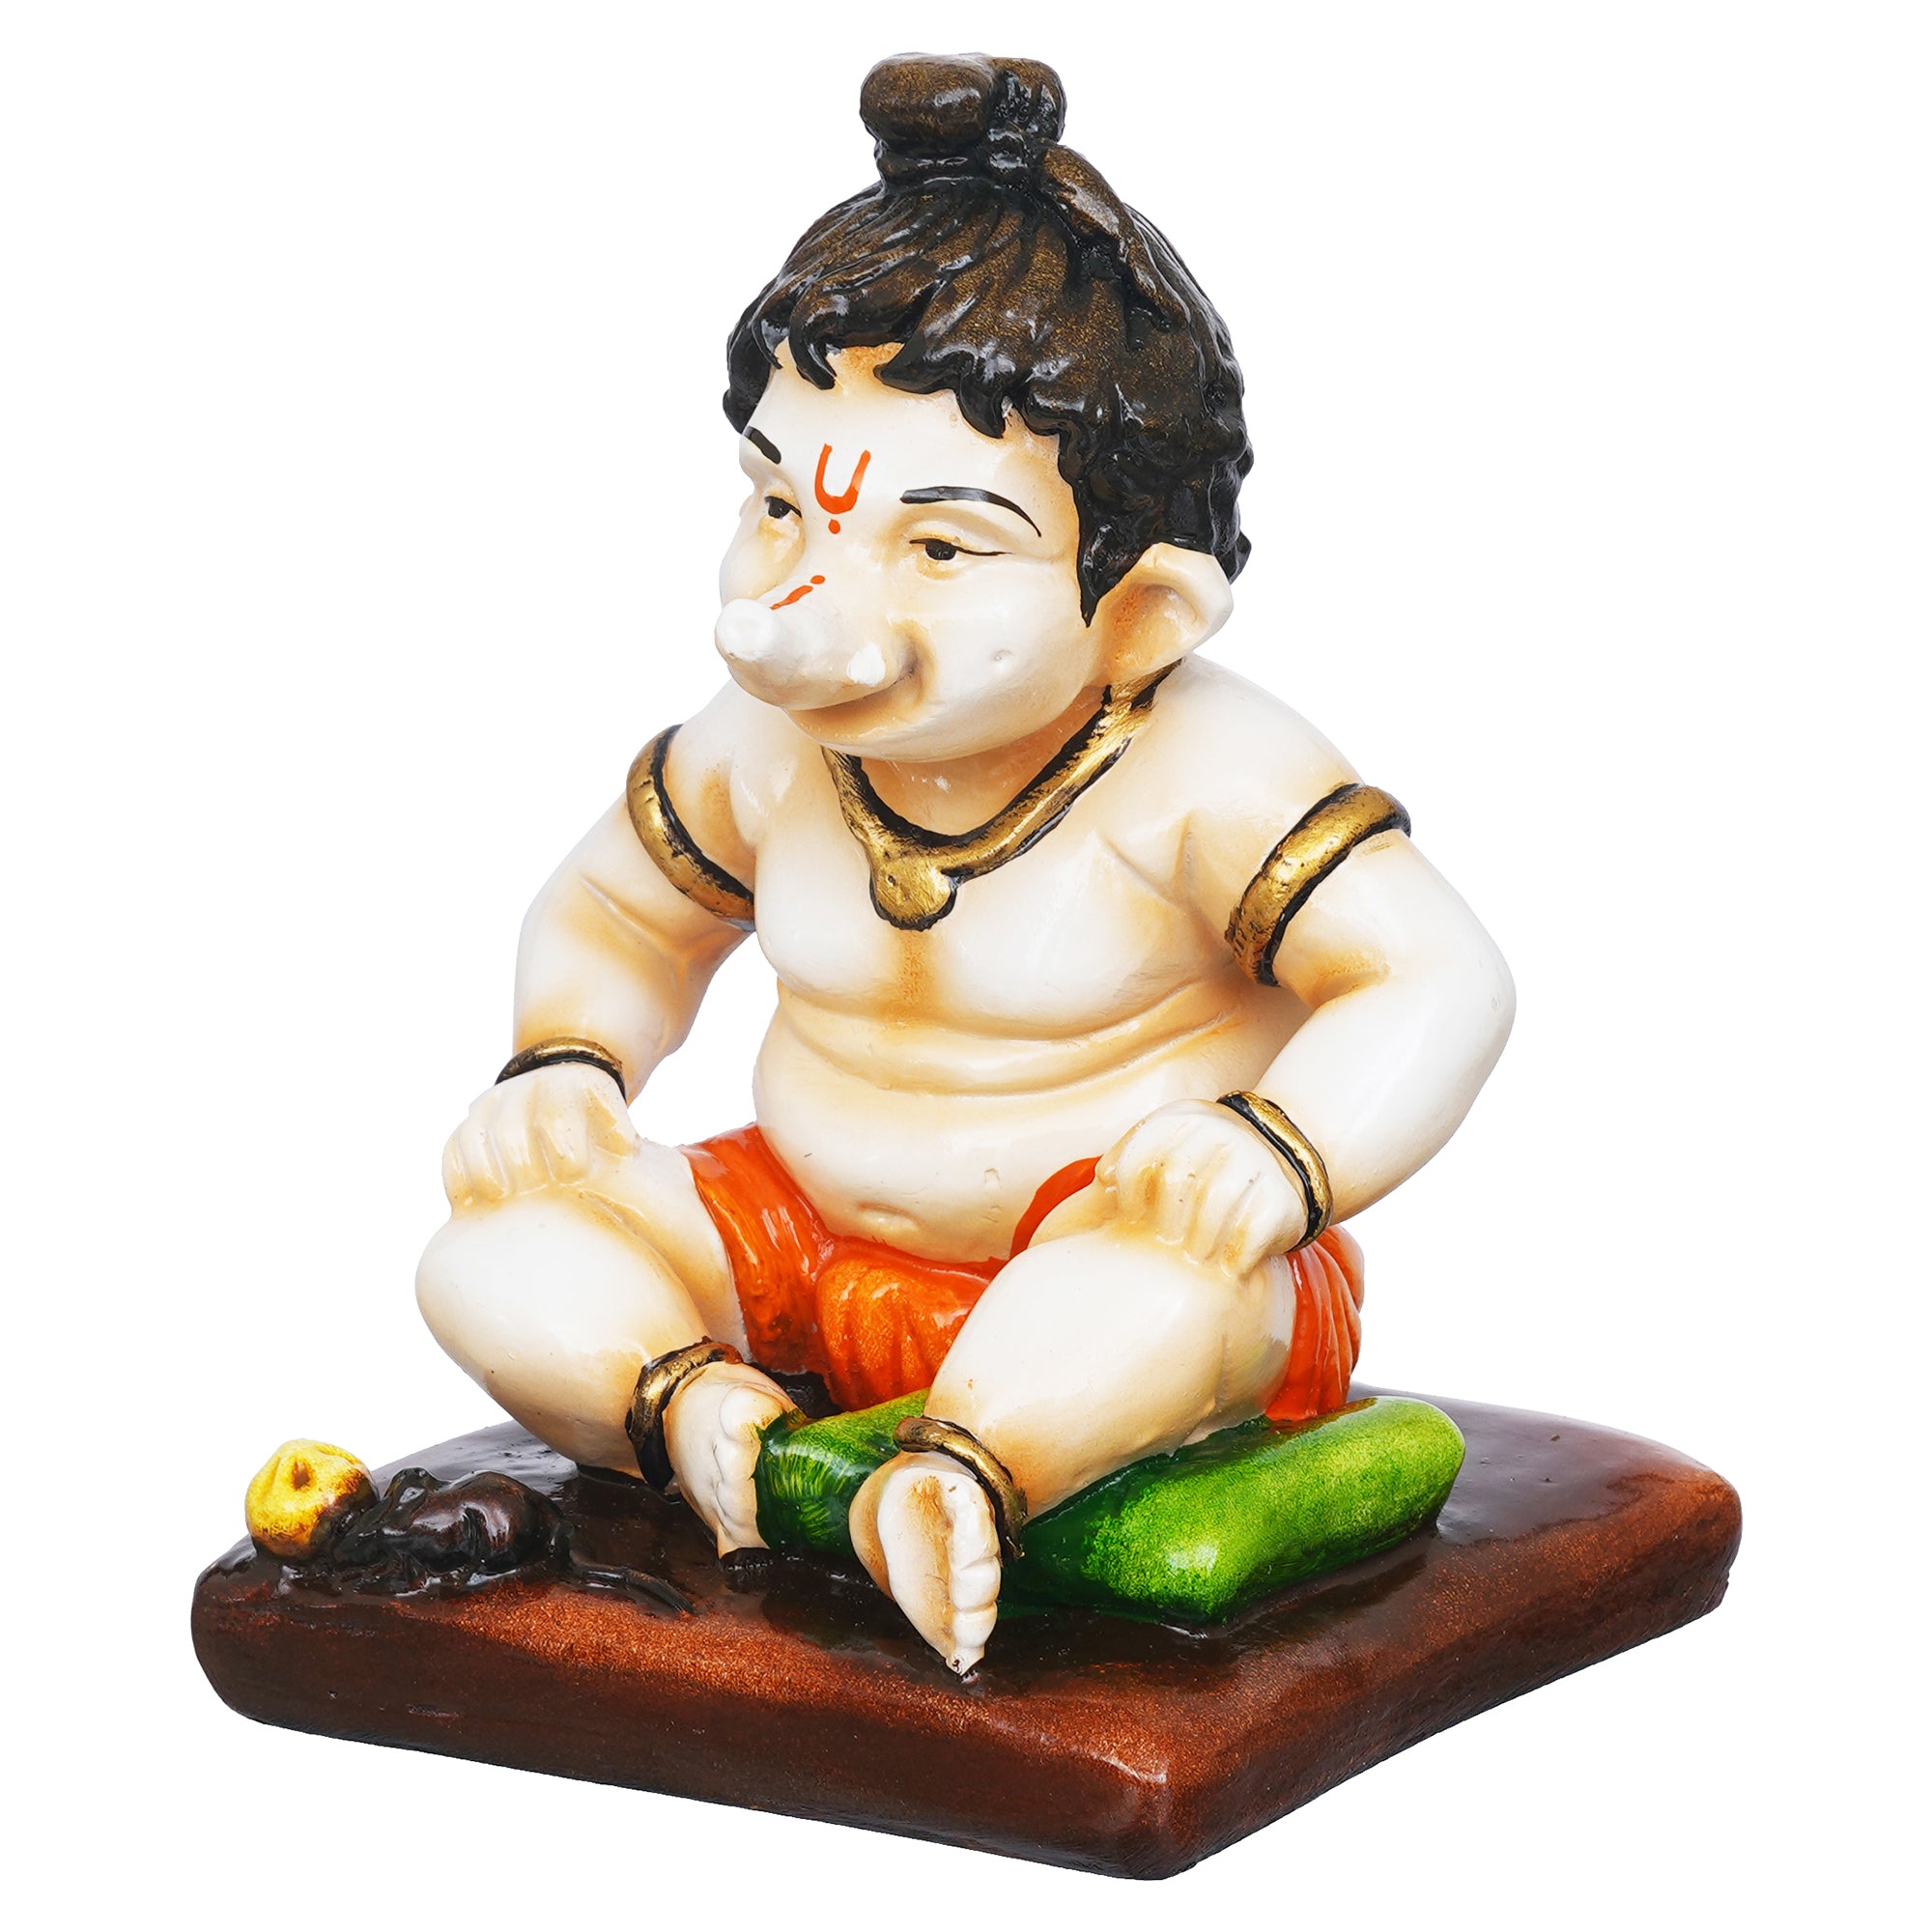 eCraftIndia Multicolor Polyresin Handcrafted Sitting Lord Ganesha Idol 7